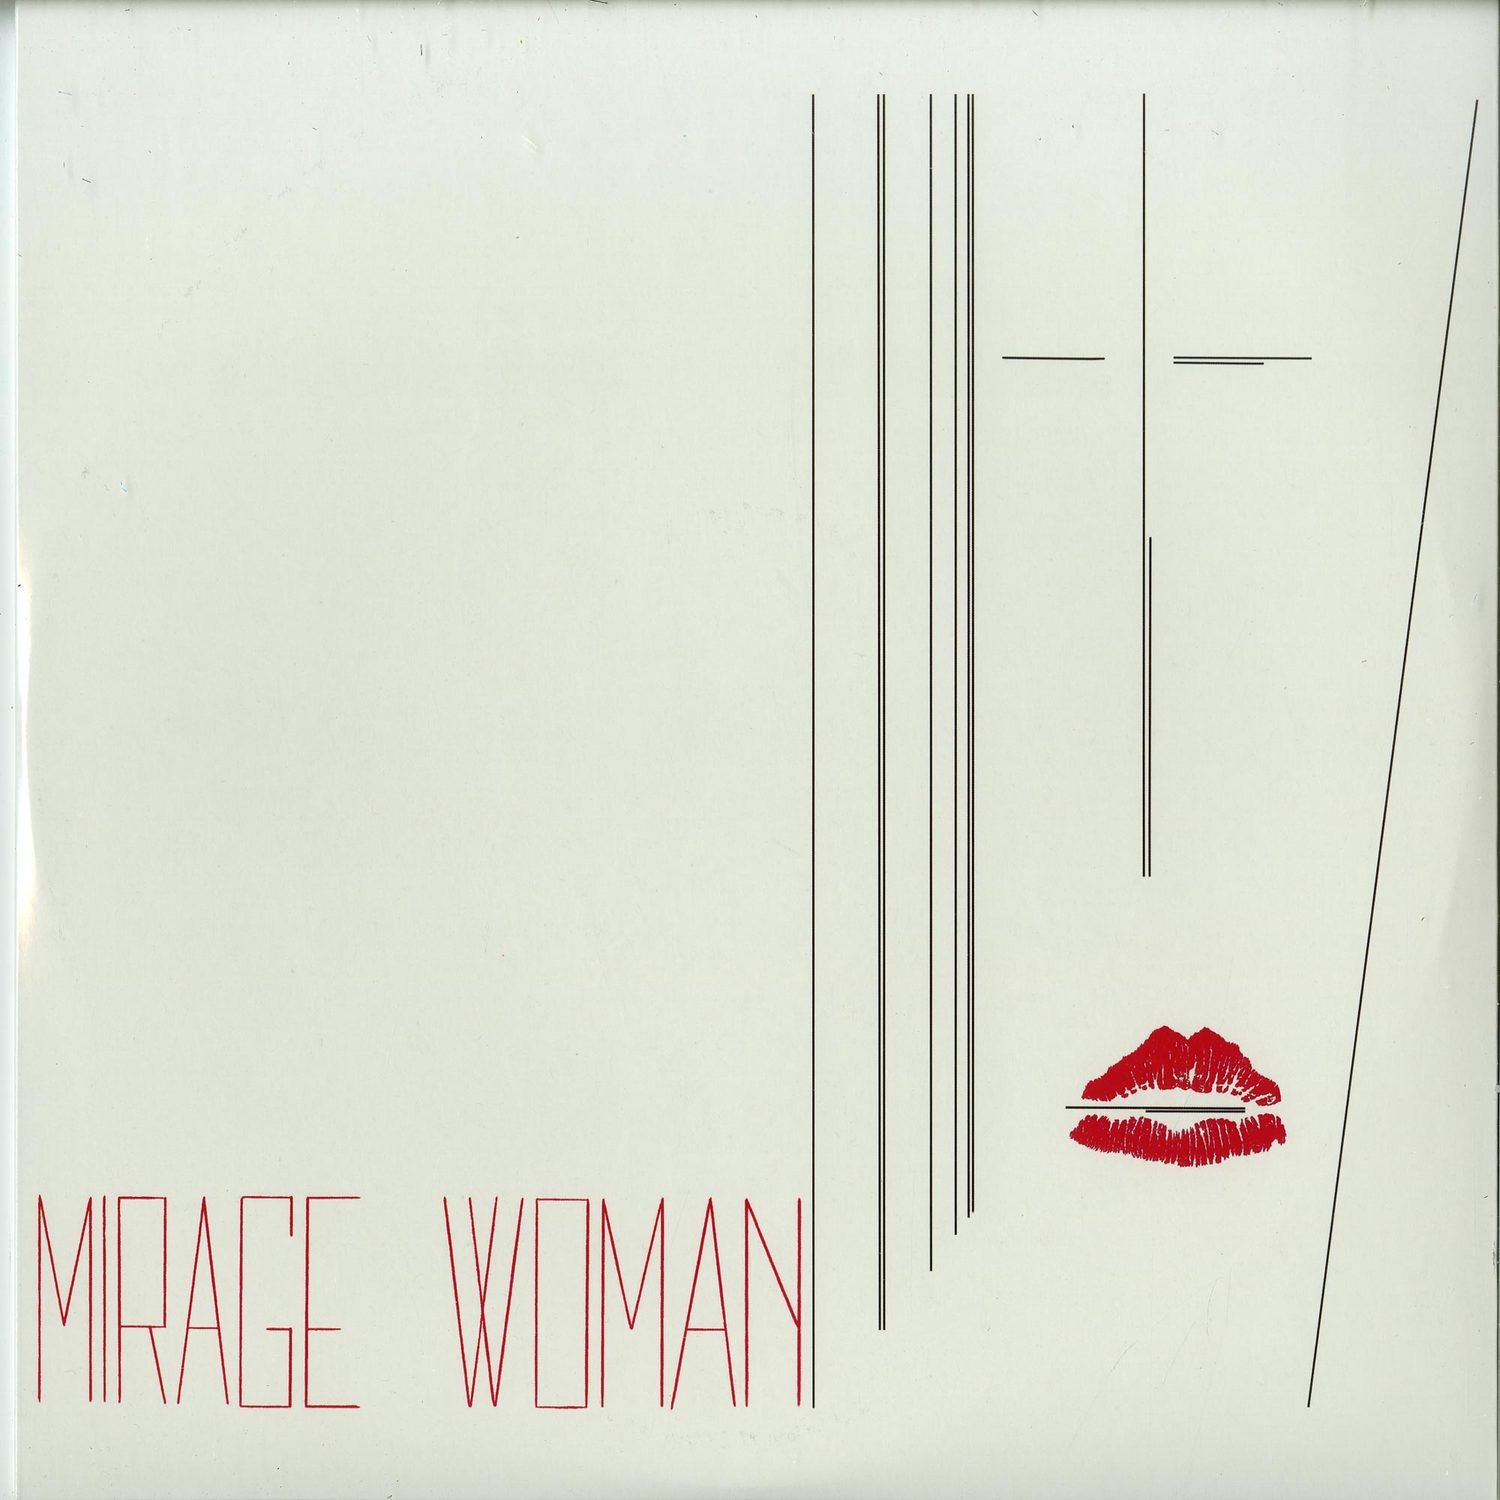 Mirage - WOMAN 